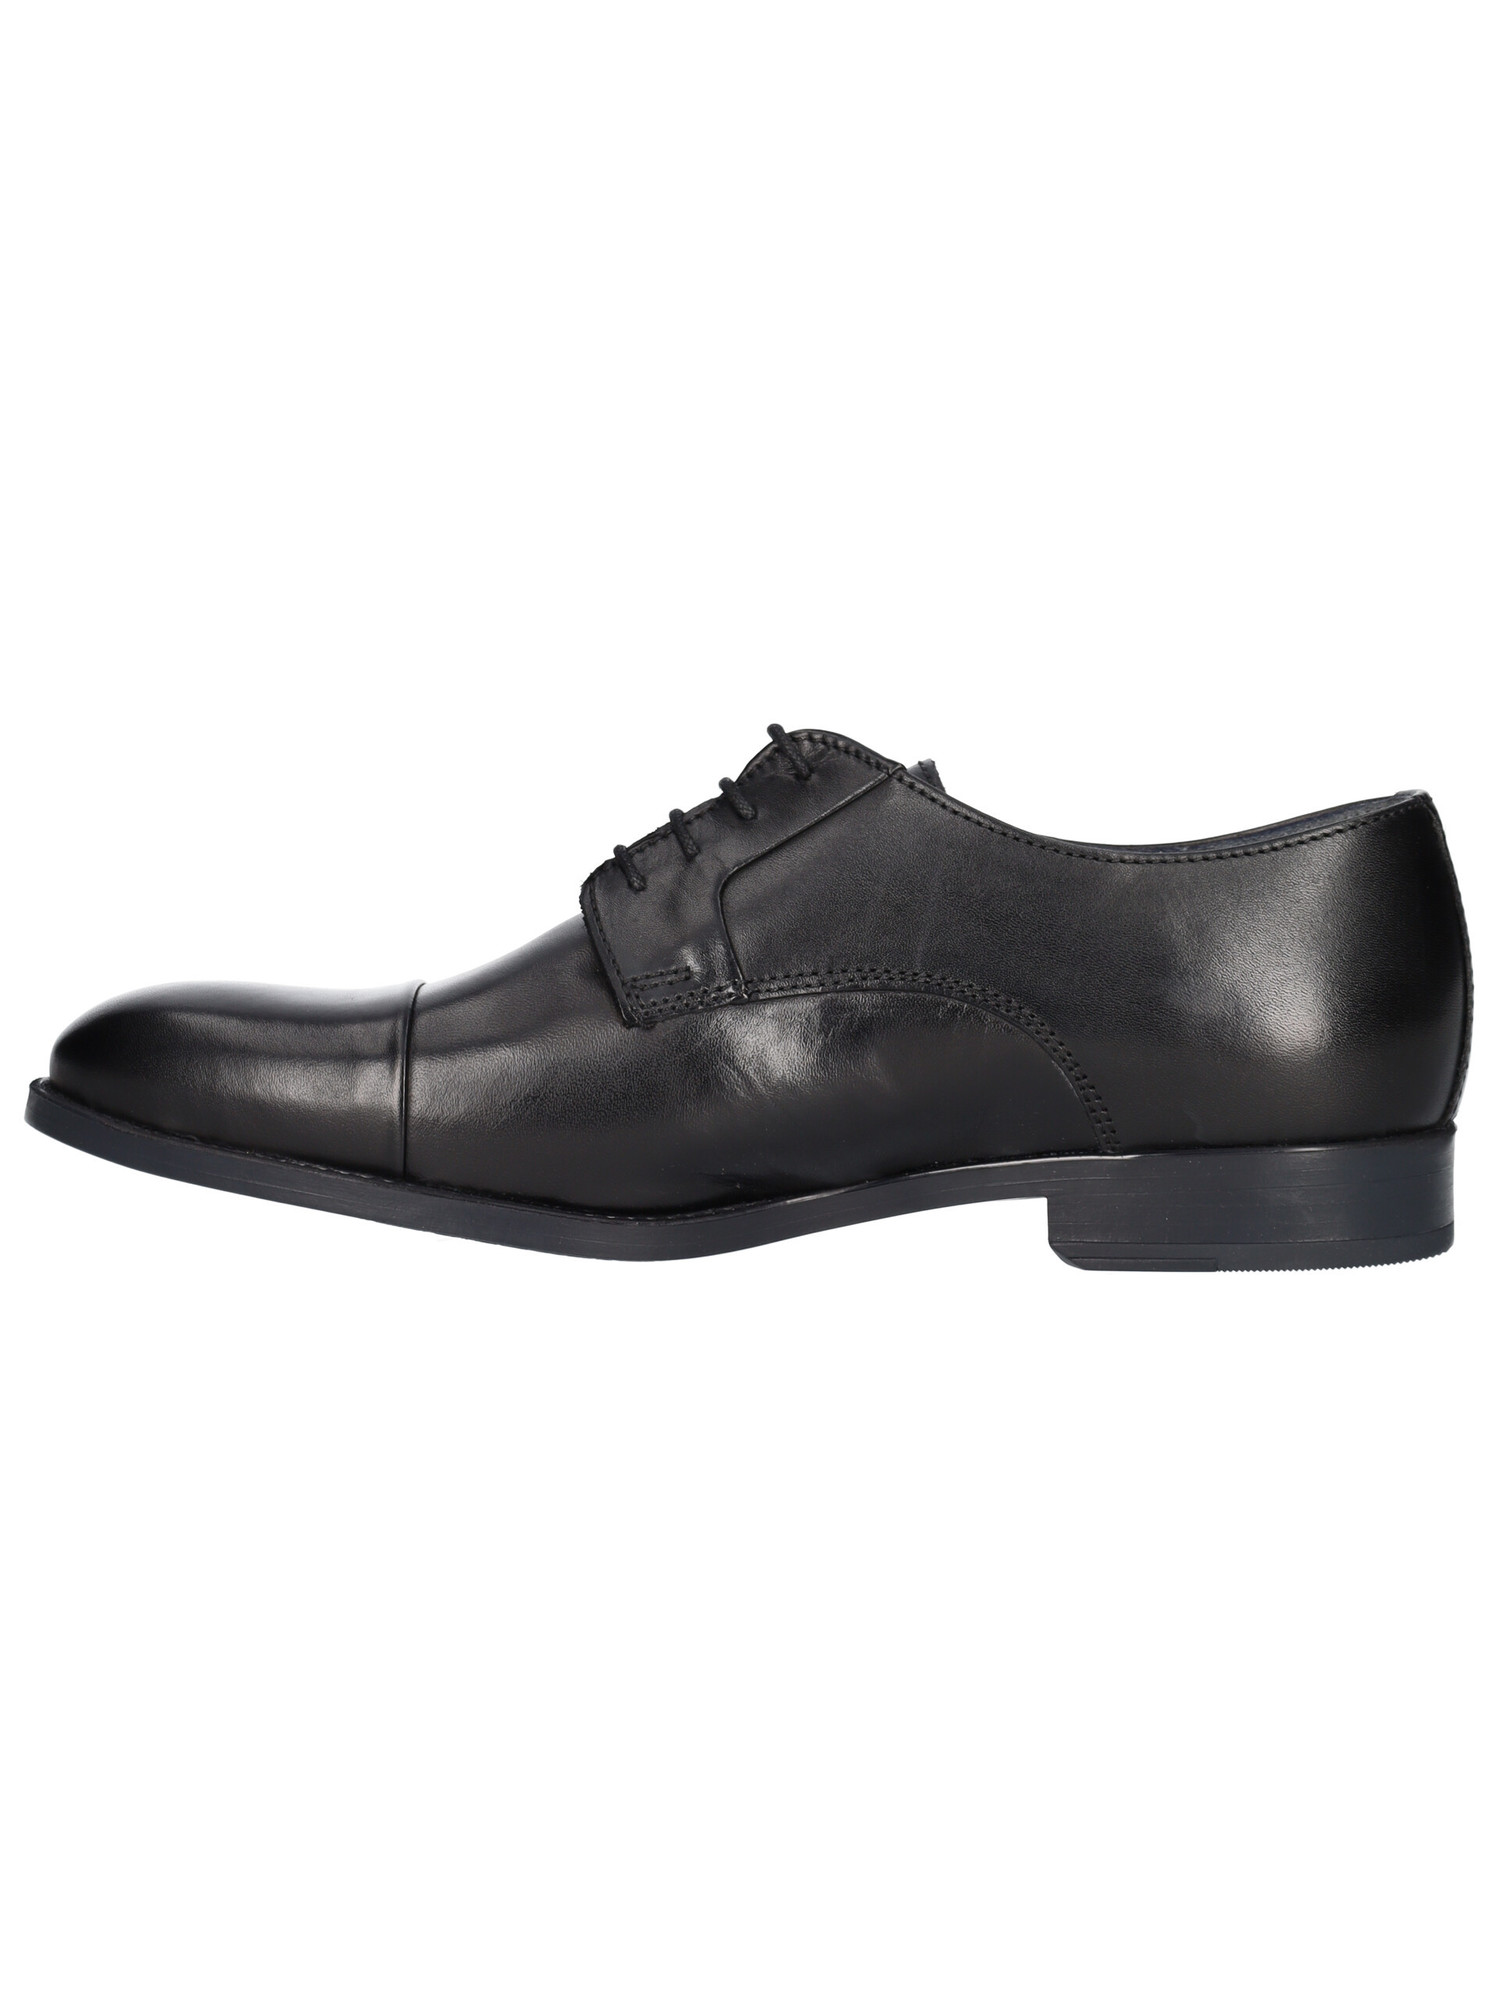 scarpa-elegante-valleverde-da-uomo-nera-938c47